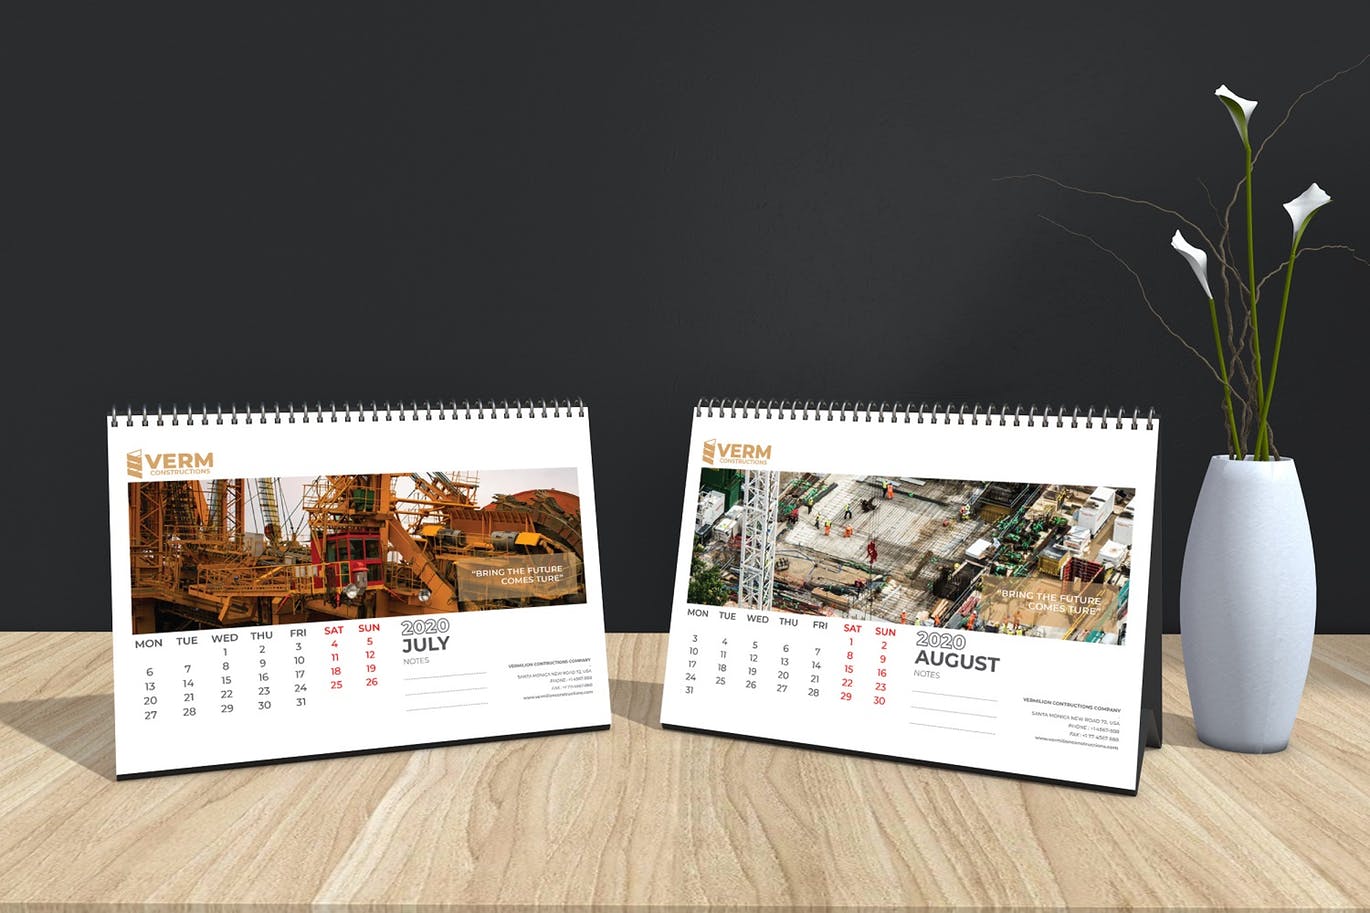 2020年建筑主题台历&挂墙日历表设计模板 Construction Wall & Table Calendar 2020插图(12)